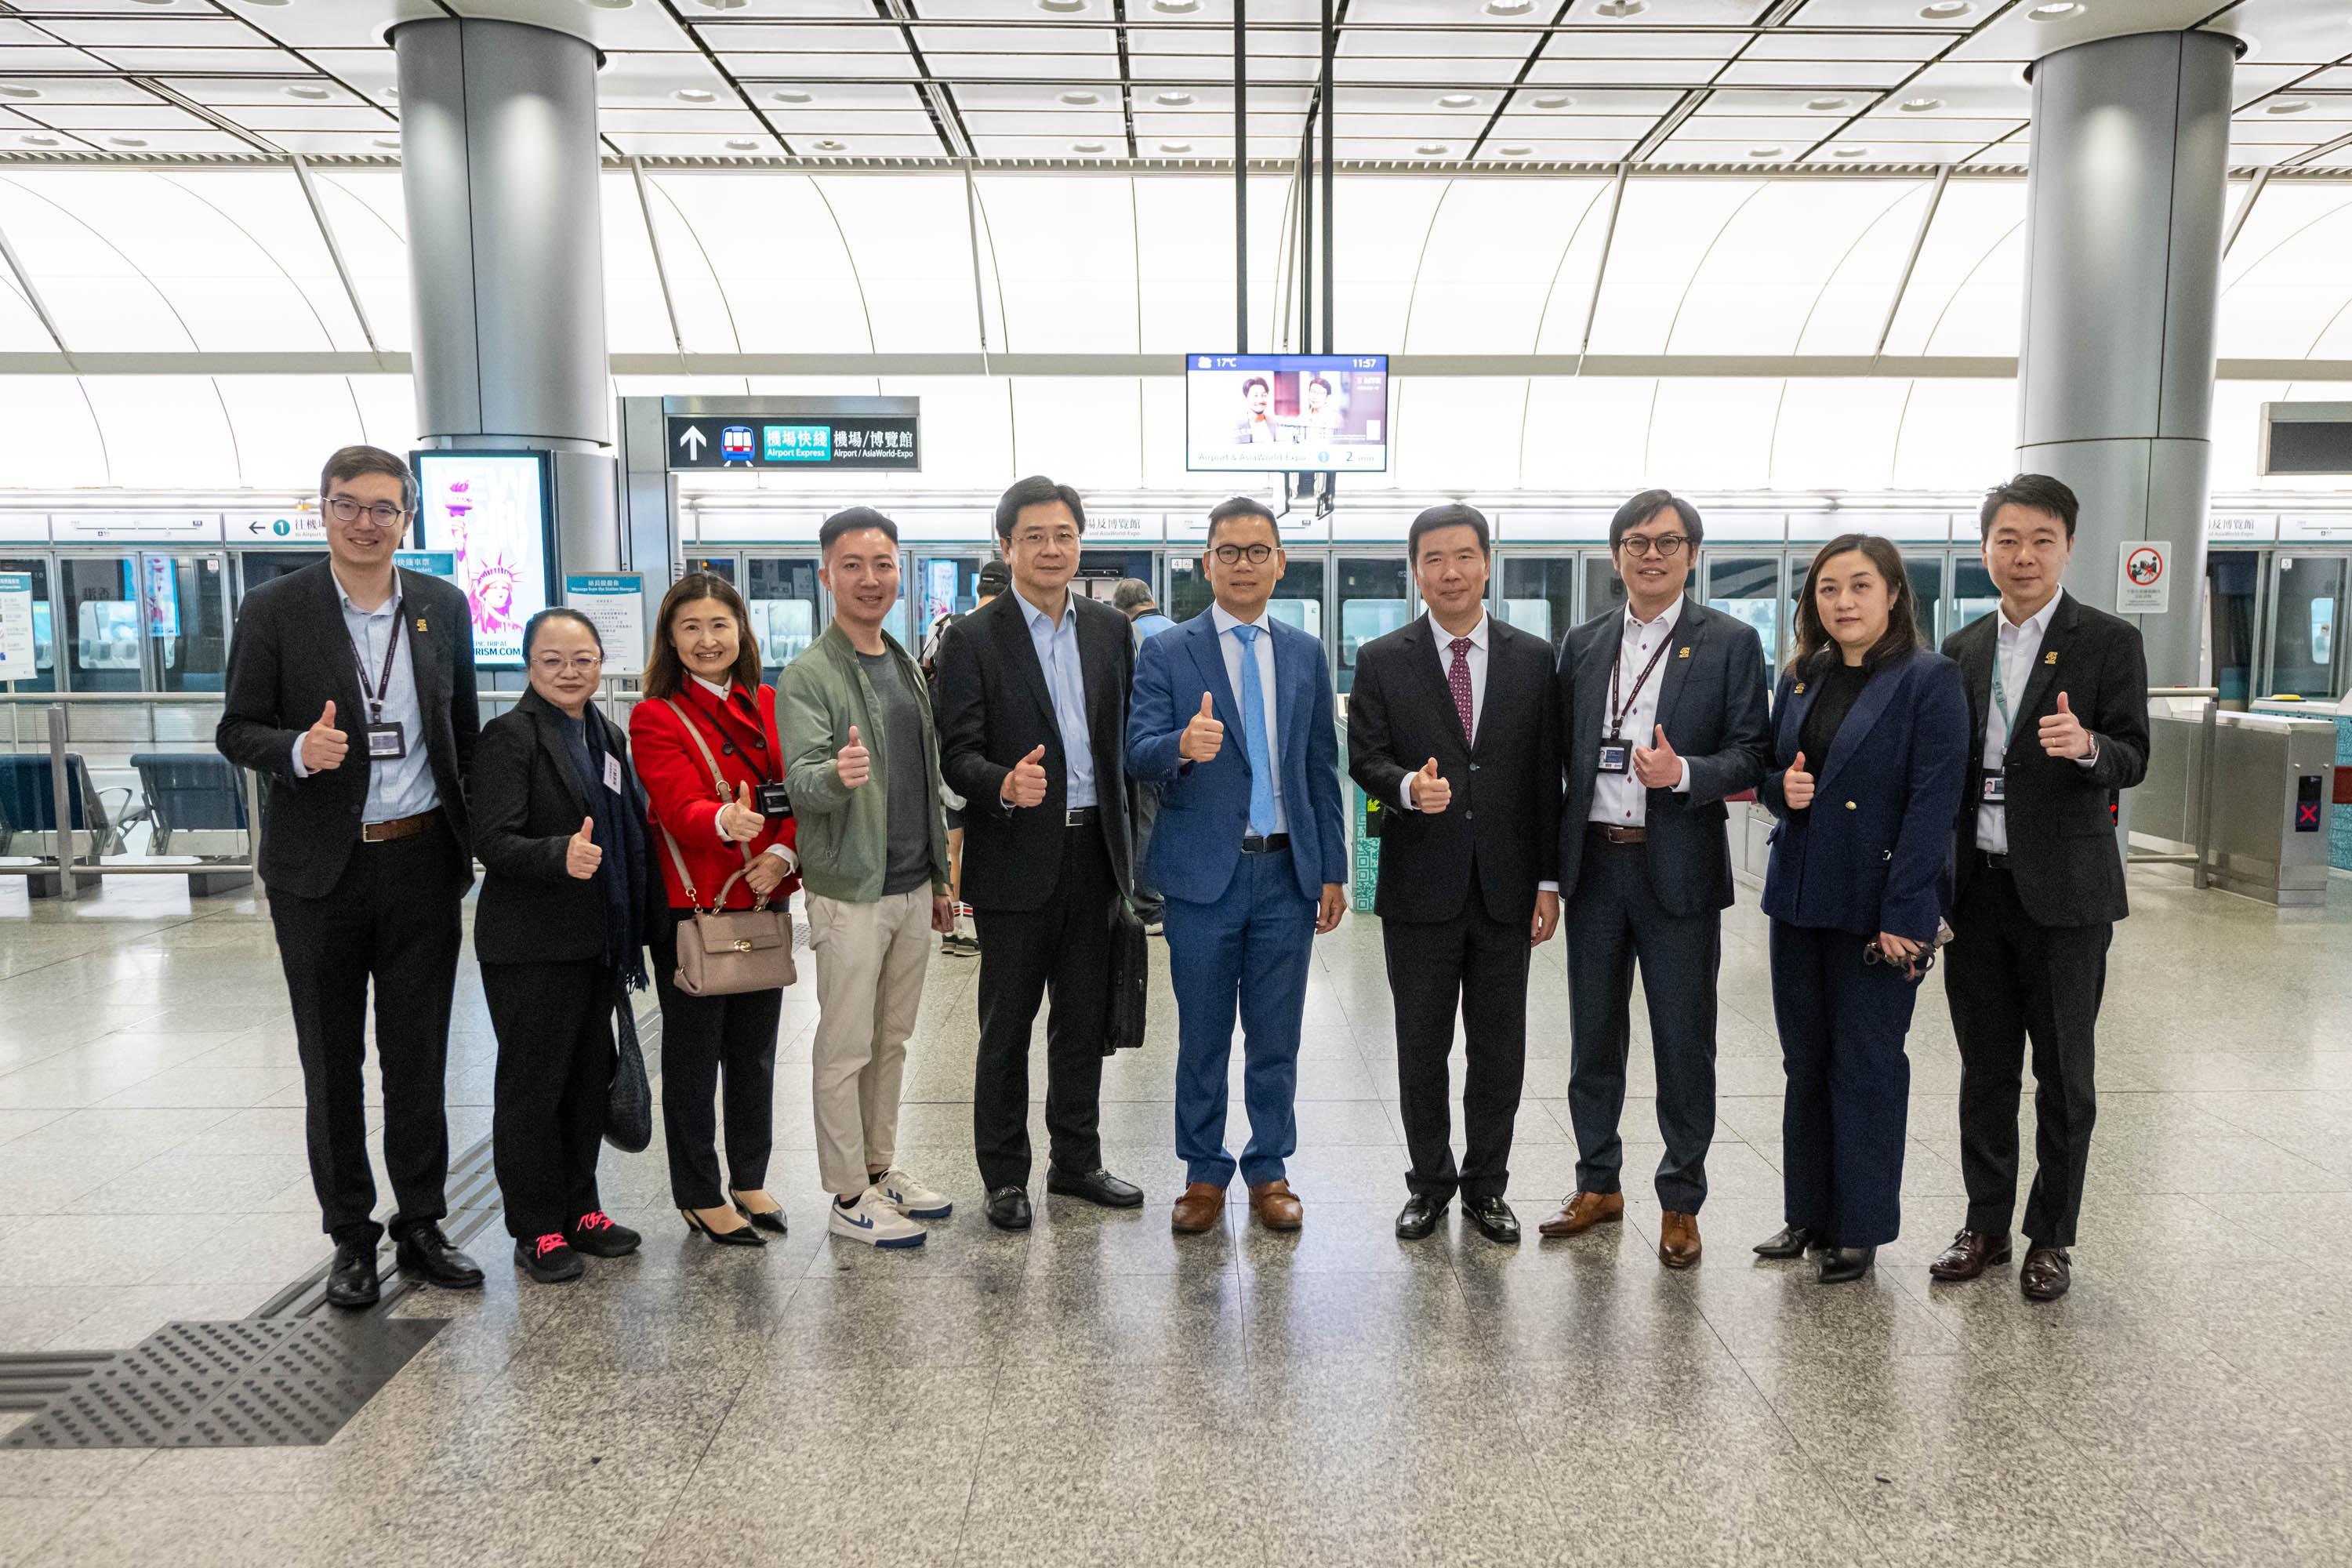 立法会交通事务委员会今日（二月二十七日）参观机场快线香港站市区预办登机服务。图示交通事务委员会主席陈恒镔（左六）、副主席李梓敬（左四）、其他立法会议员和香港铁路有限公司代表在机场快线香港站合照。